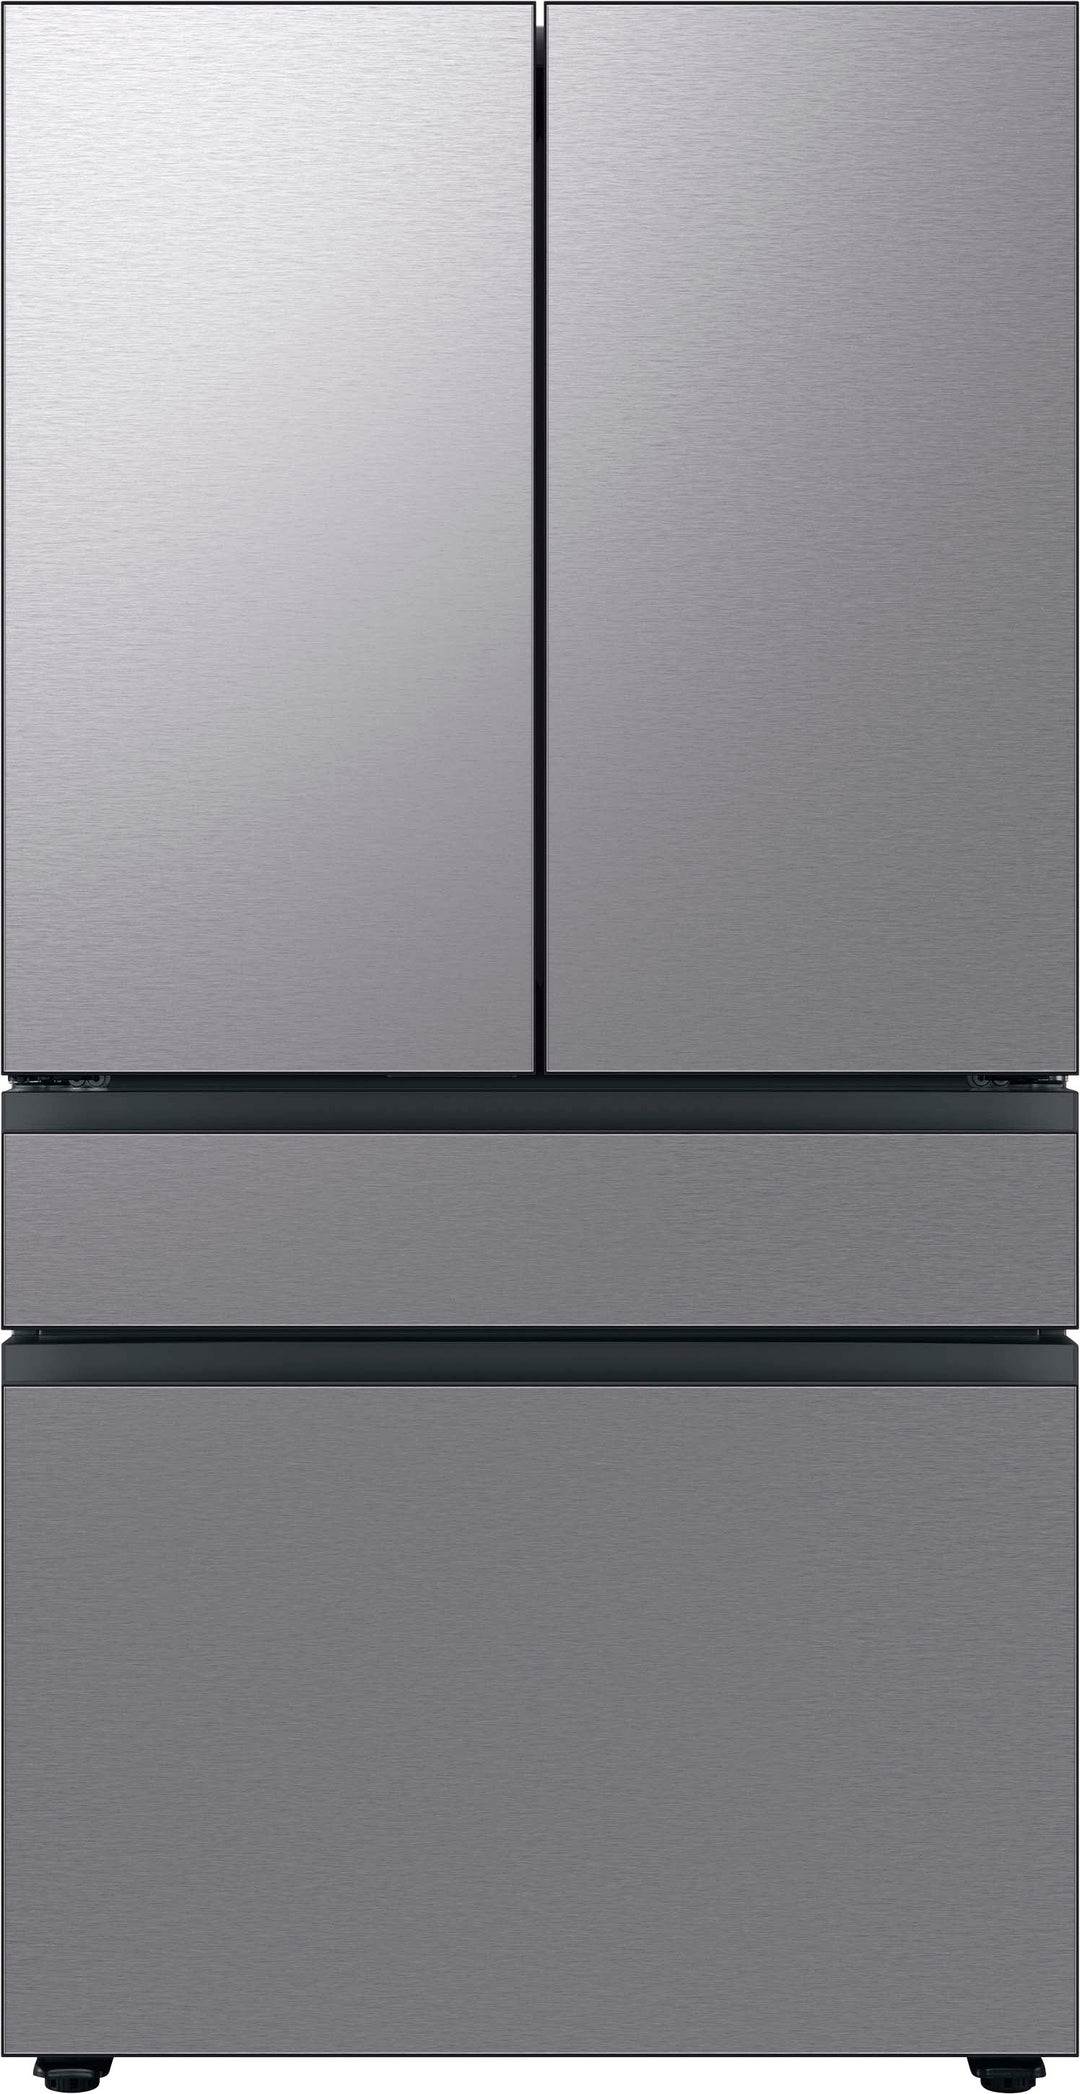 Samsung - Bespoke 23 cu. ft. Counter Depth 4-Door French Door Refrigerator with Beverage Center - Stainless steel_0